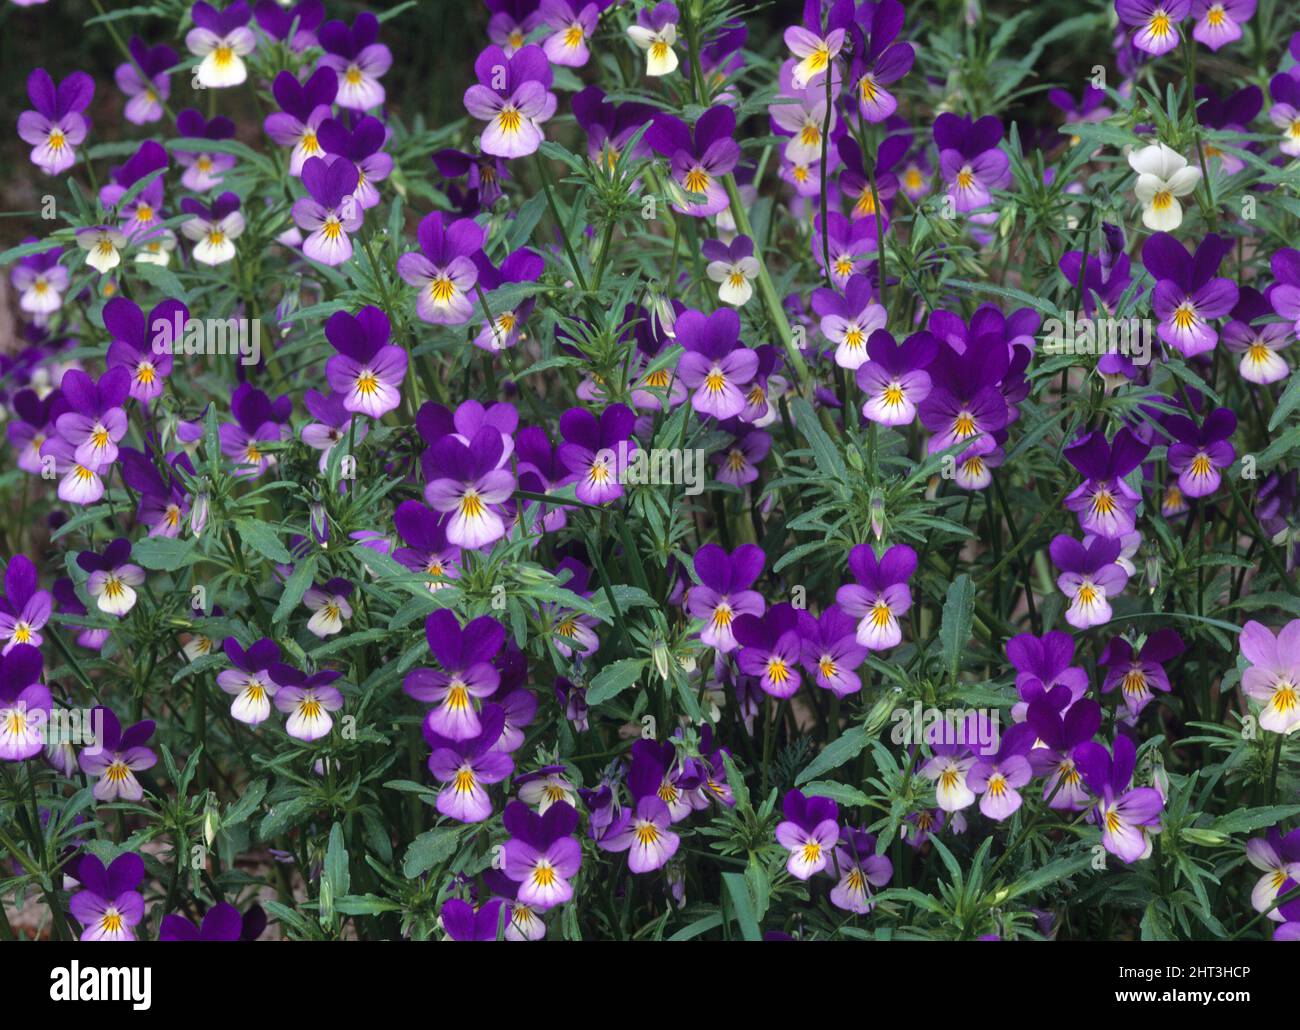 Stepmother violets Stock Photo